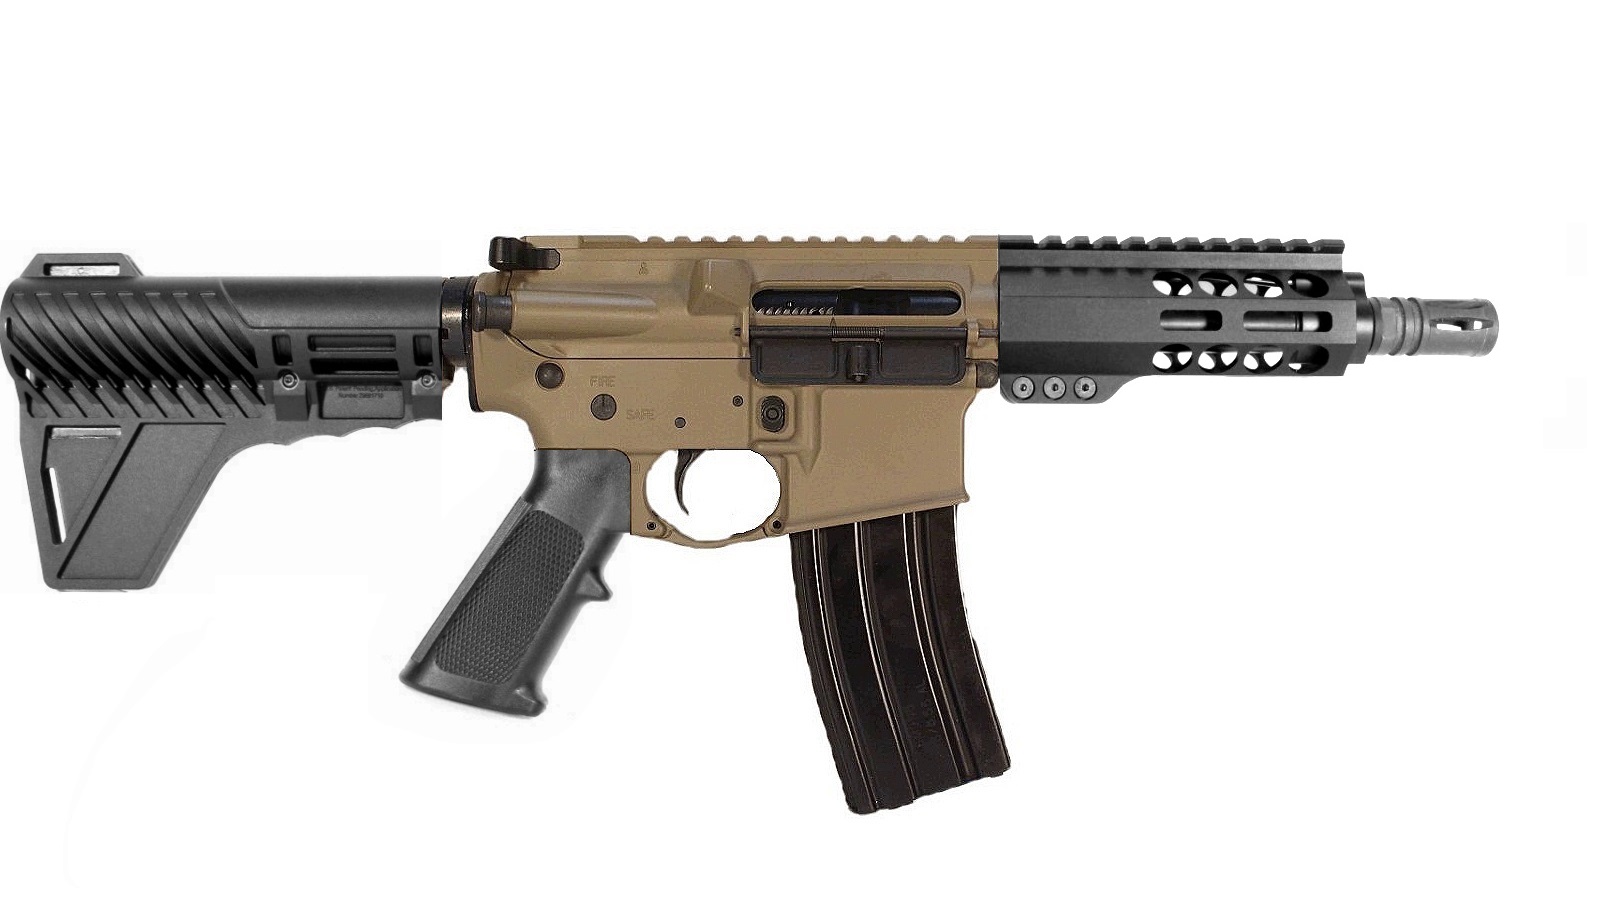 6 inch 300BLK AR Pistol 2 Tone FDE/BLK